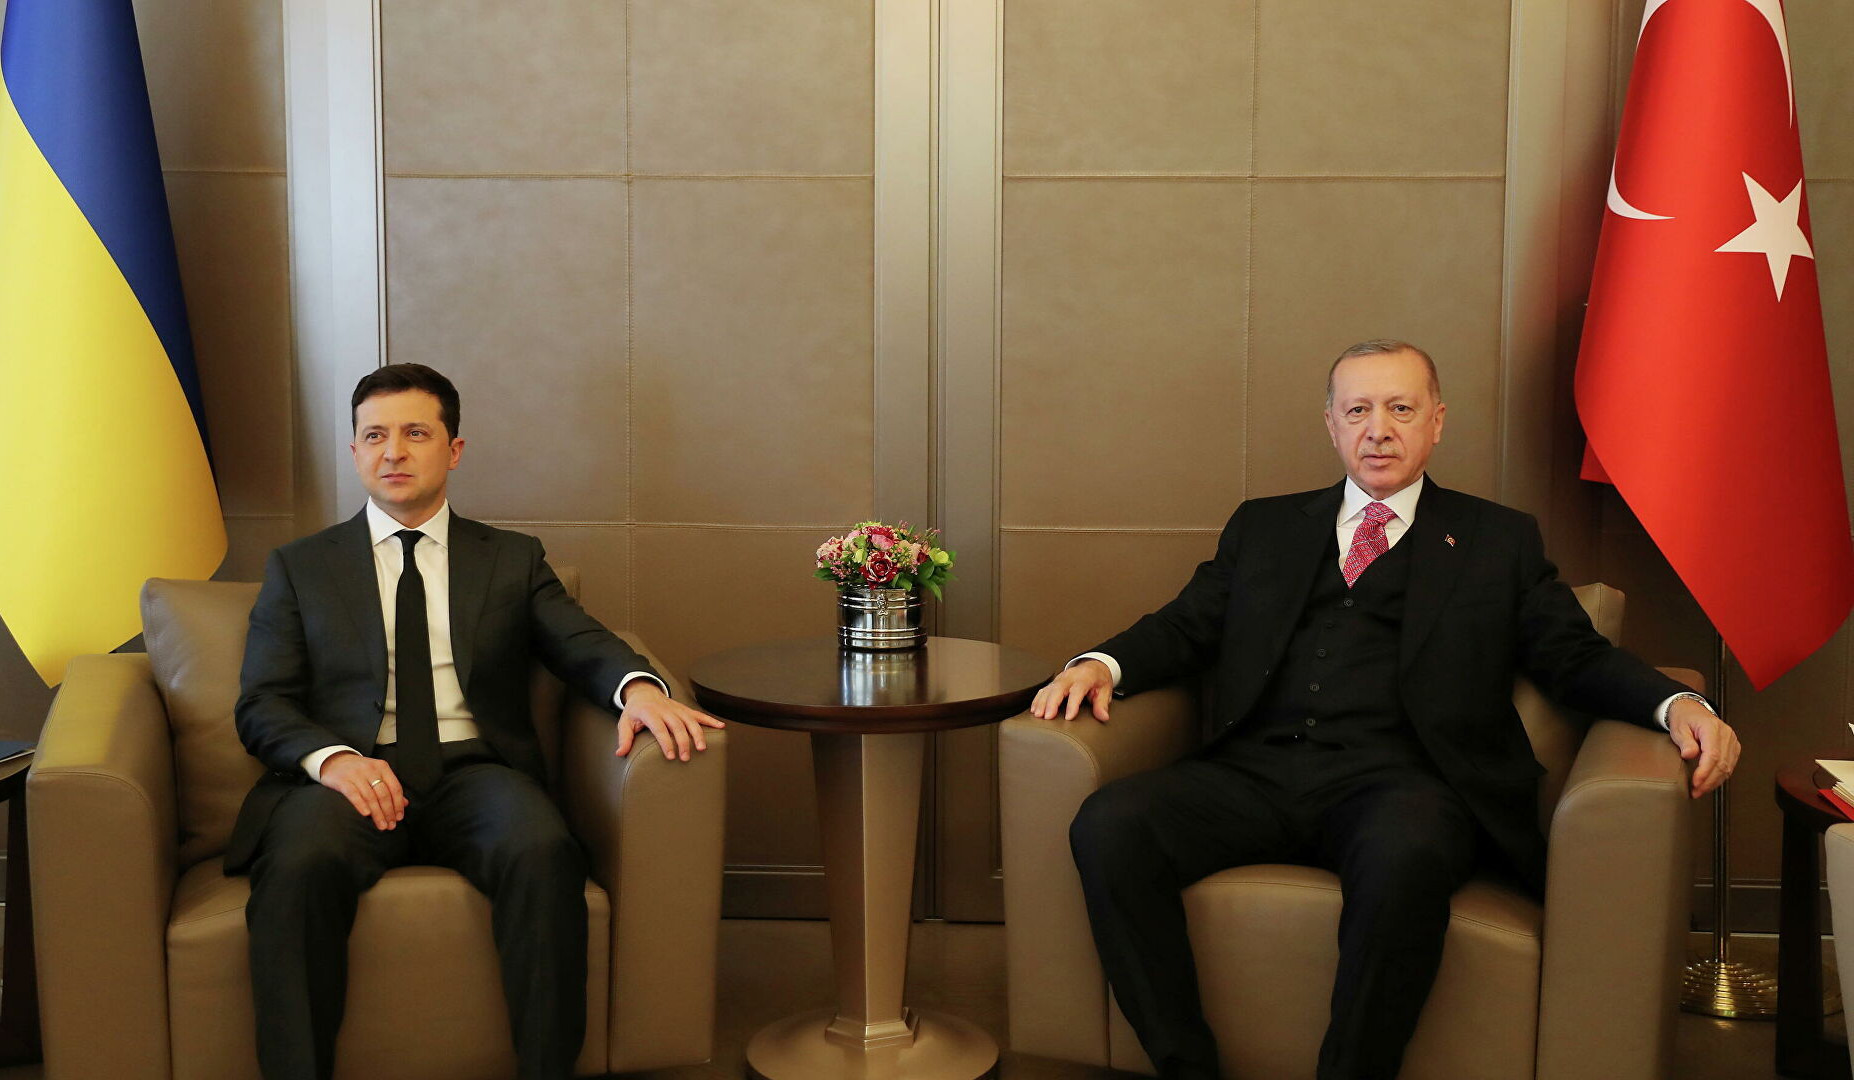 Ուկրաինան և Թուրքիան ազատ առևտրի մասին համաձայնագիր կստորագրեն. Զելենսկի